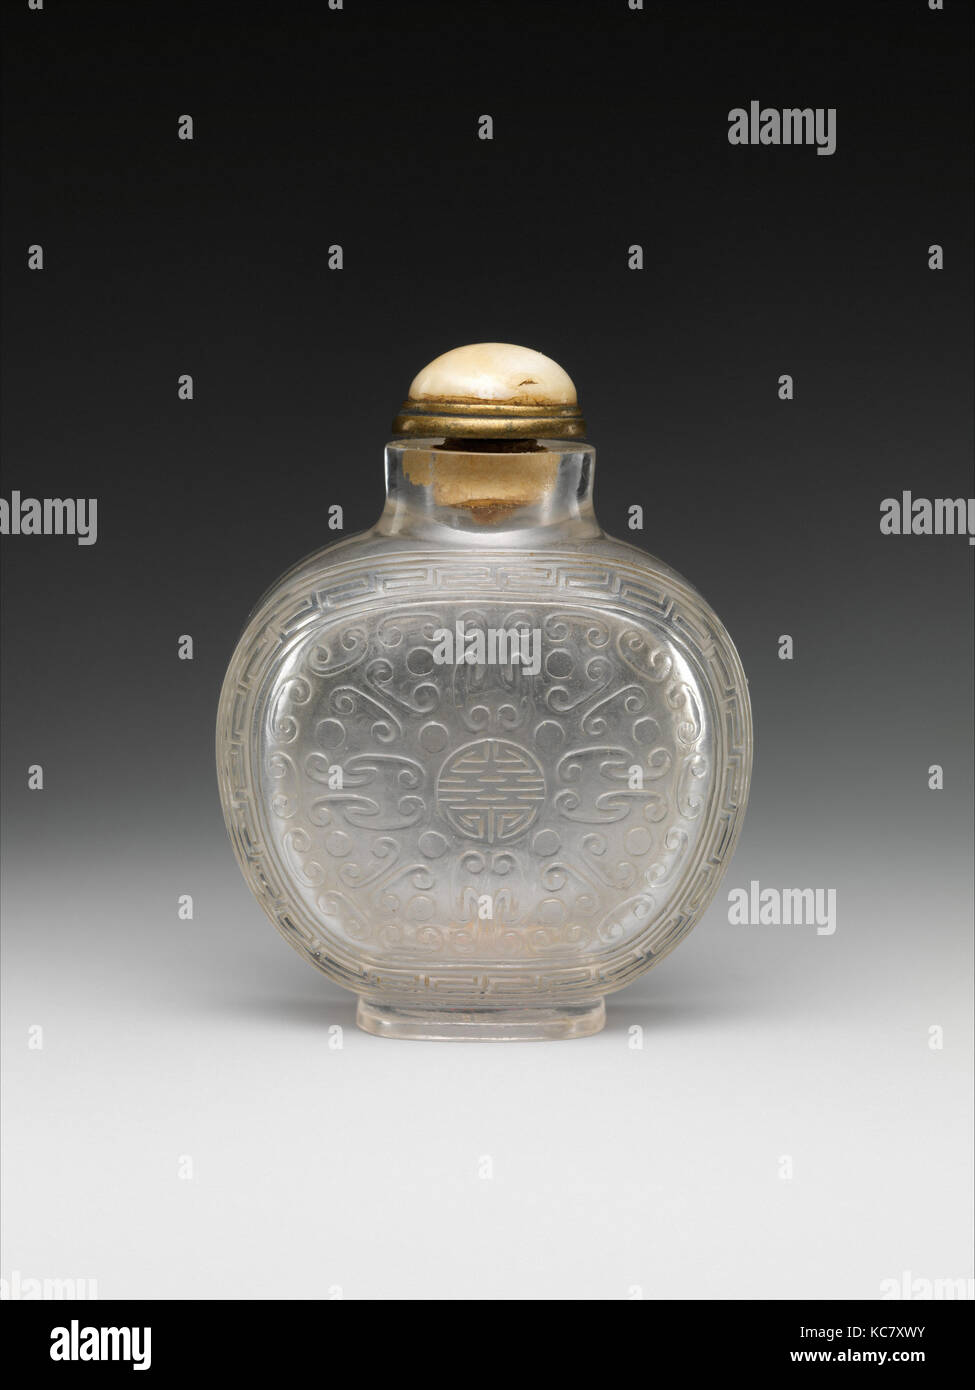 El rapé botella con el carácter de la longevidad (shou), del siglo XIX. Foto de stock